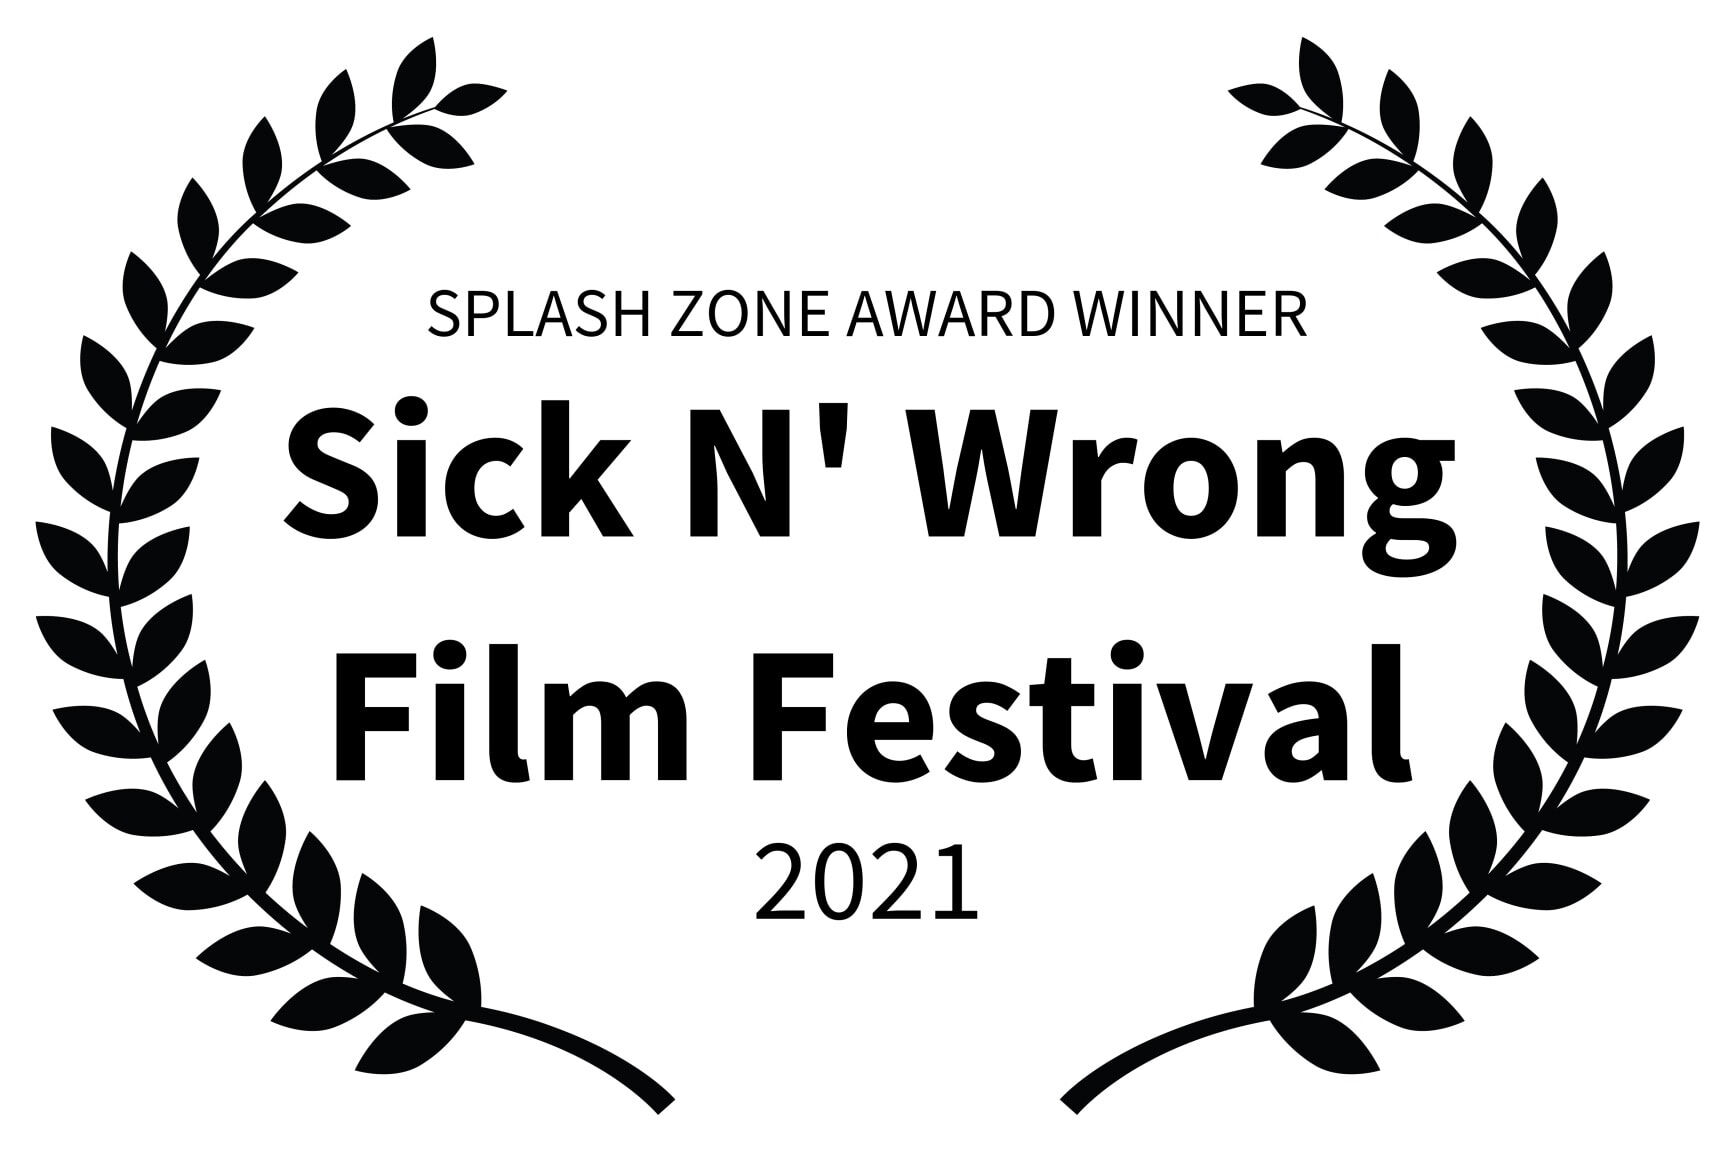 SPLASH ZONE AWARD WINNER - Sick N Wrong Film Festival - 2021